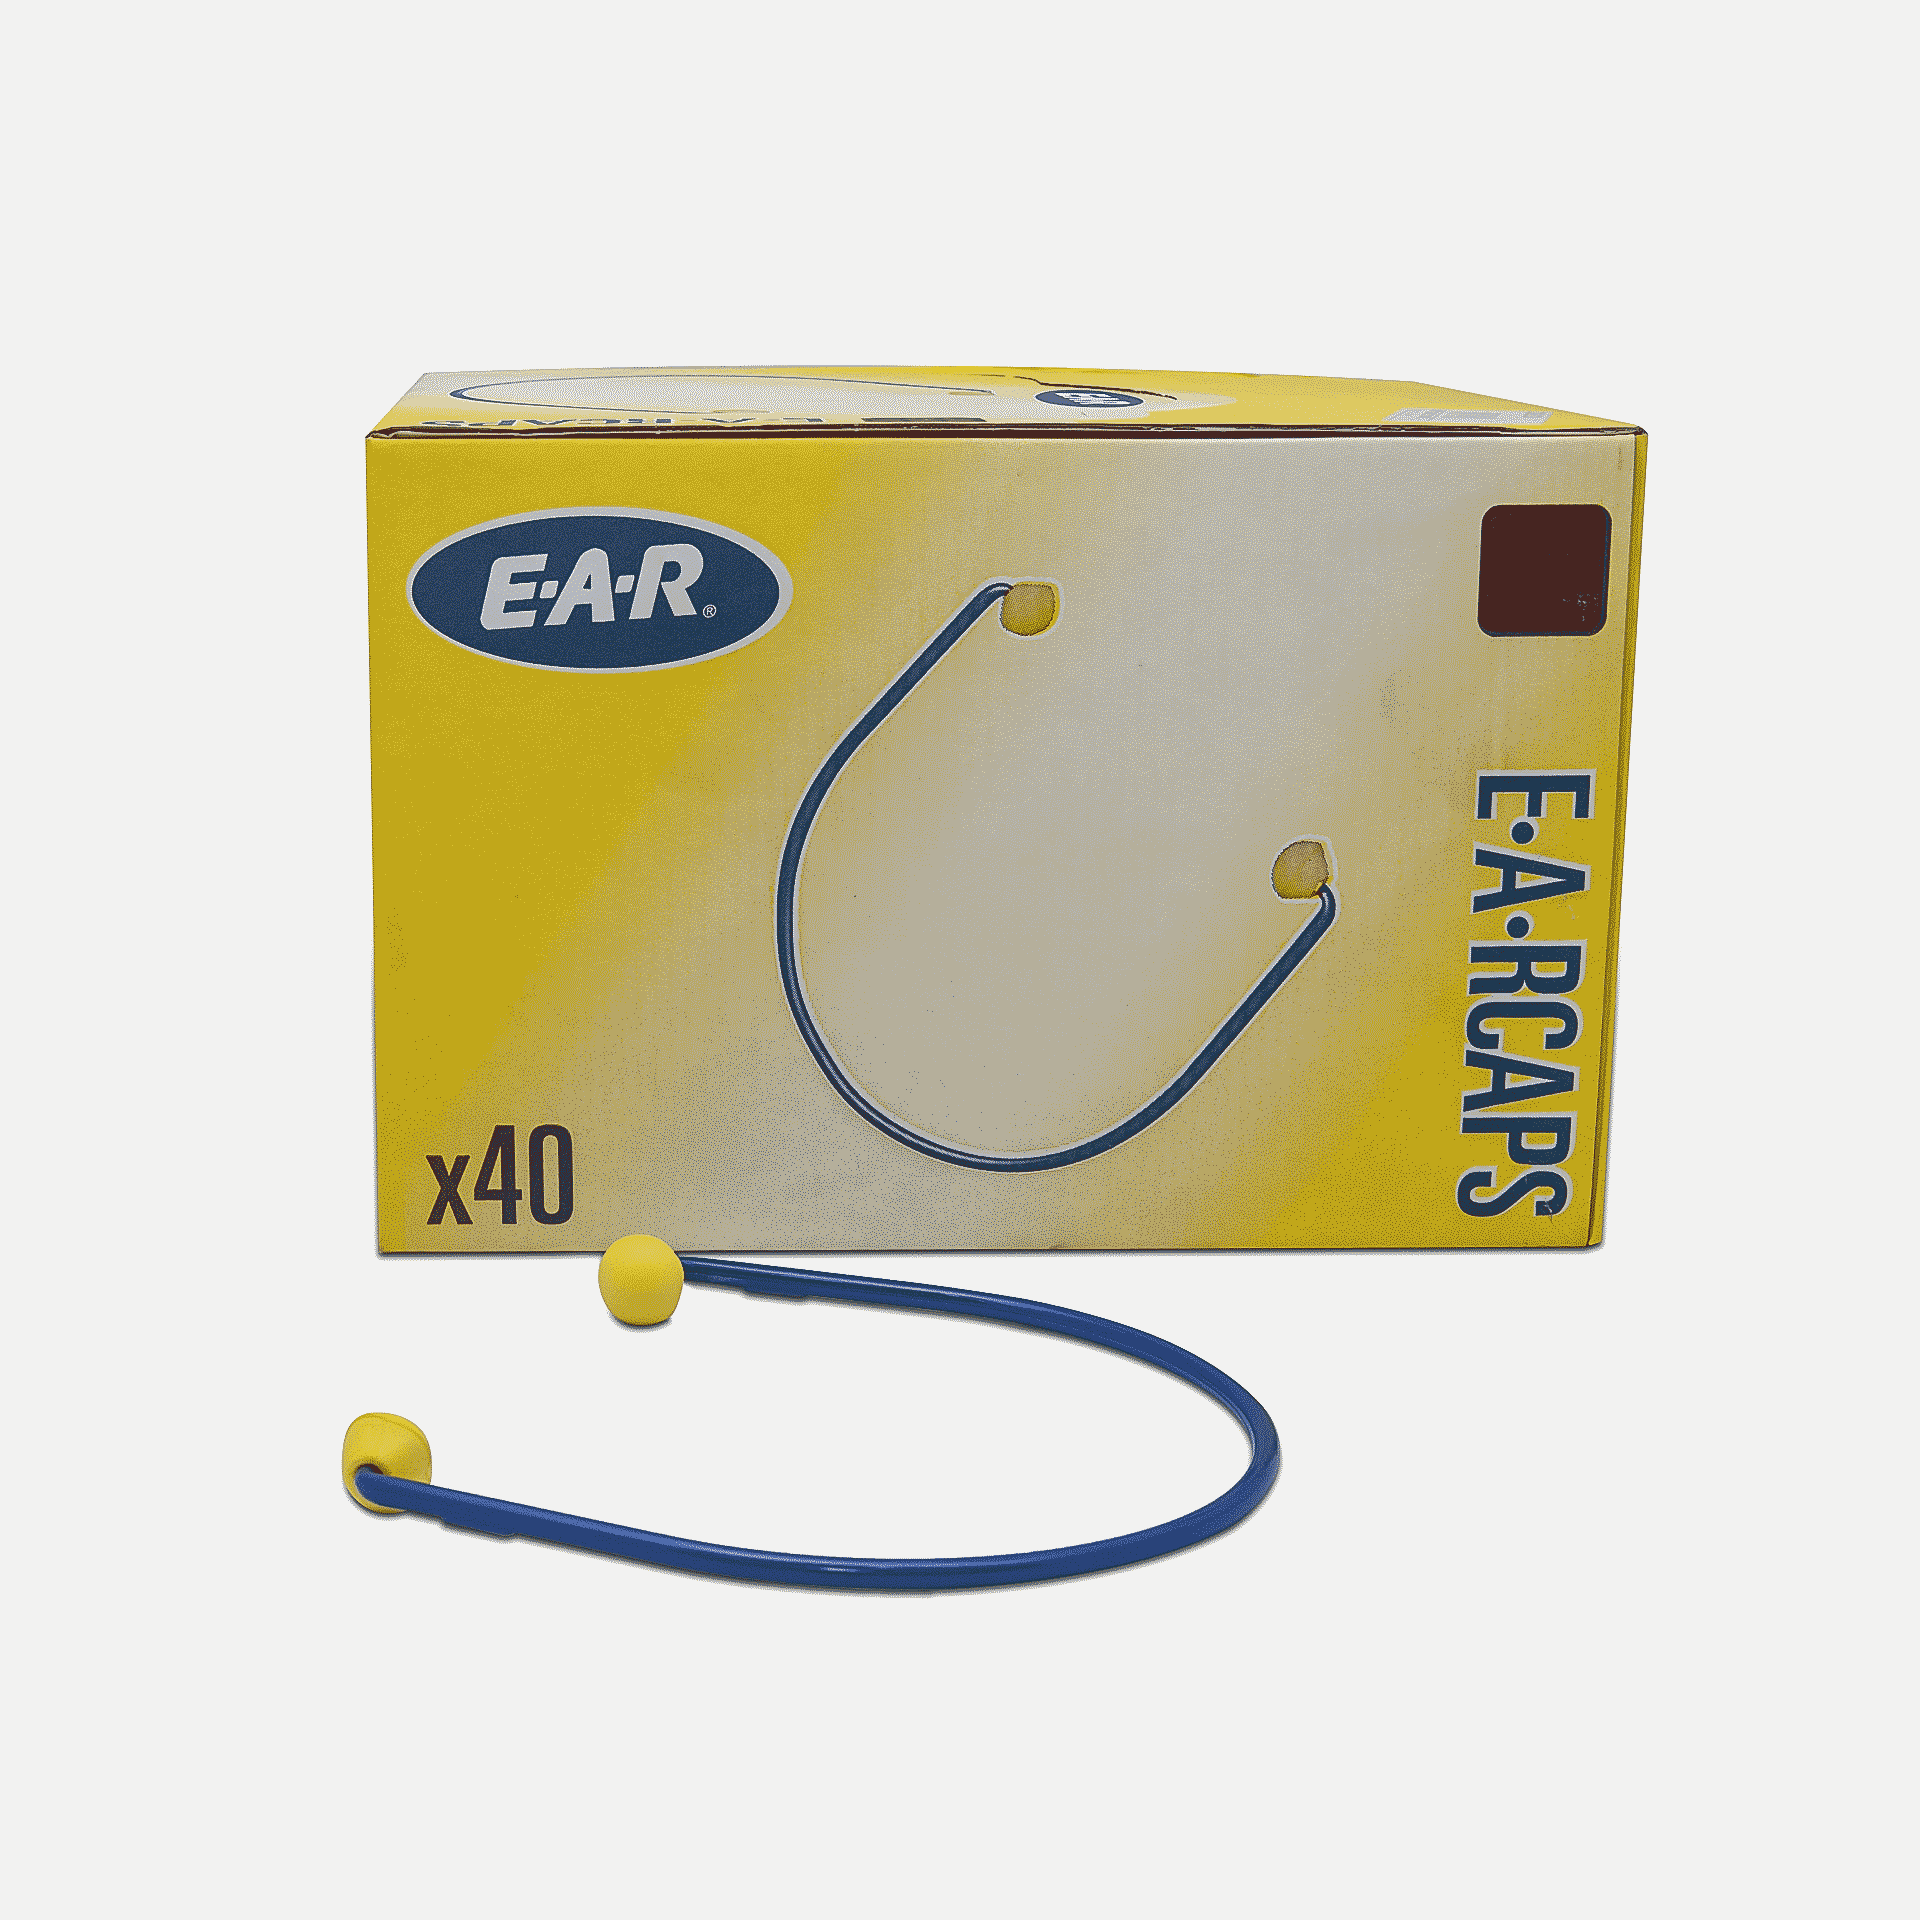 inserti-auricolari-3m-ec-01-000-ear-cap-scatola.png